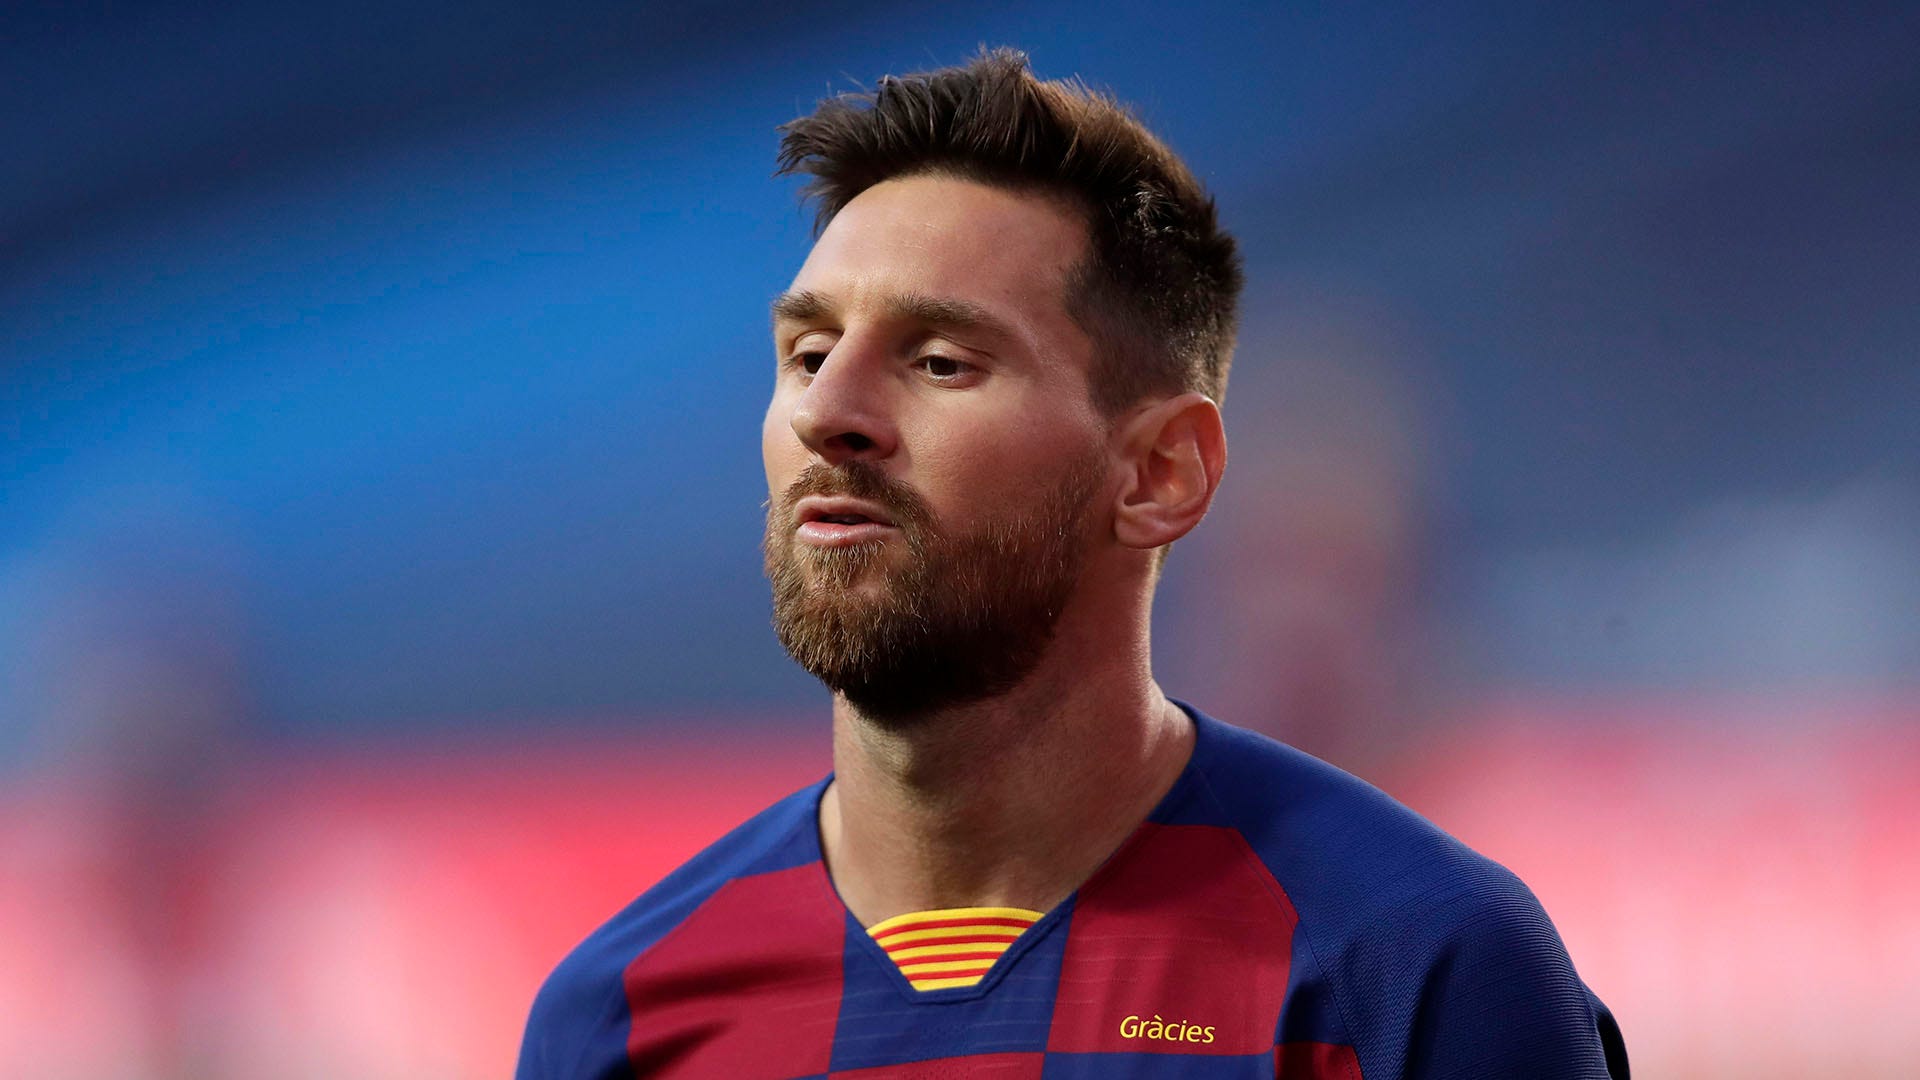 Hãy xem hình ảnh của Messi và cảm nhận sự tài năng vô địch của anh chàng này!